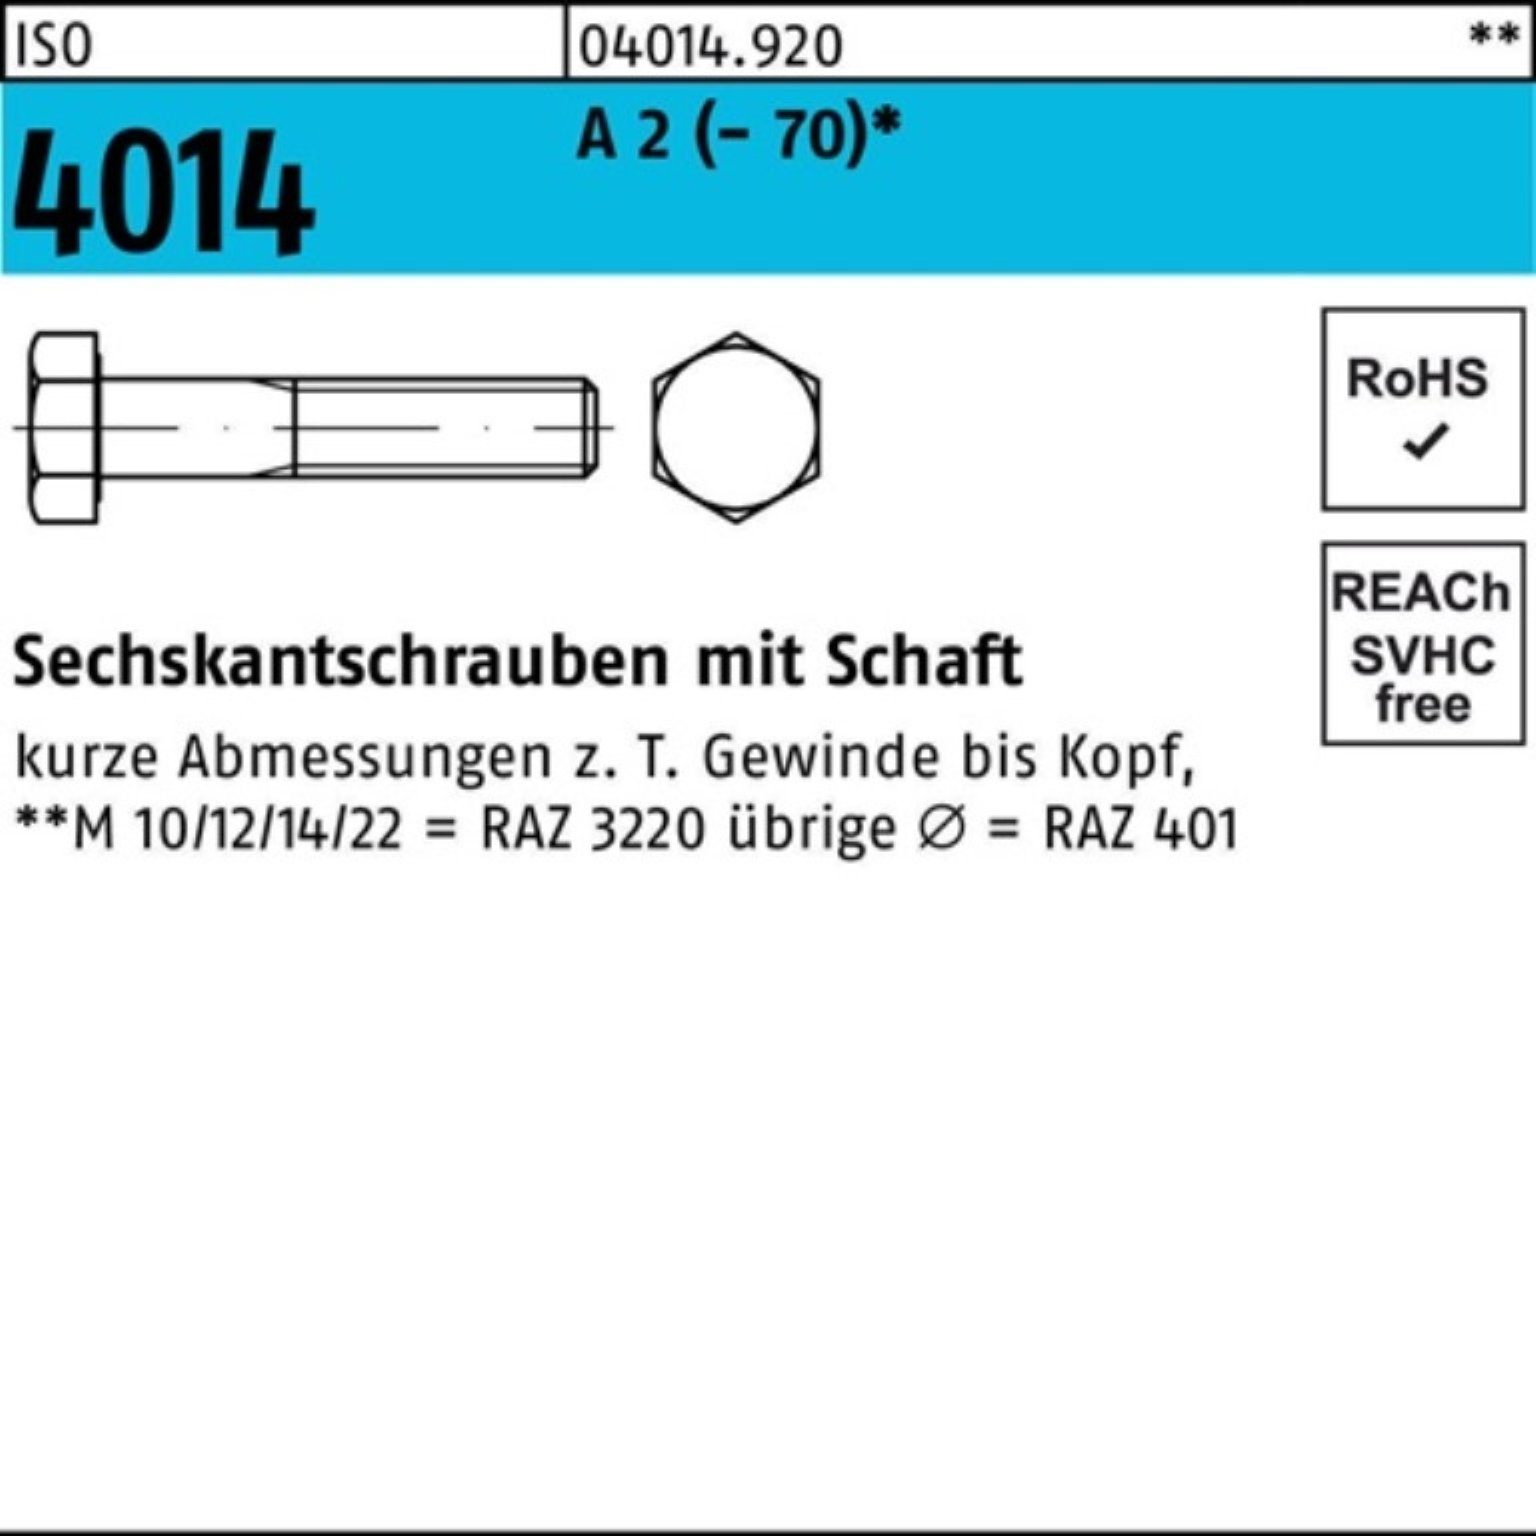 Sechskantschraube 2 1 (70) A Schaft Bufab St M24x 250 100er Pack 4014 ISO Sechskantschraube